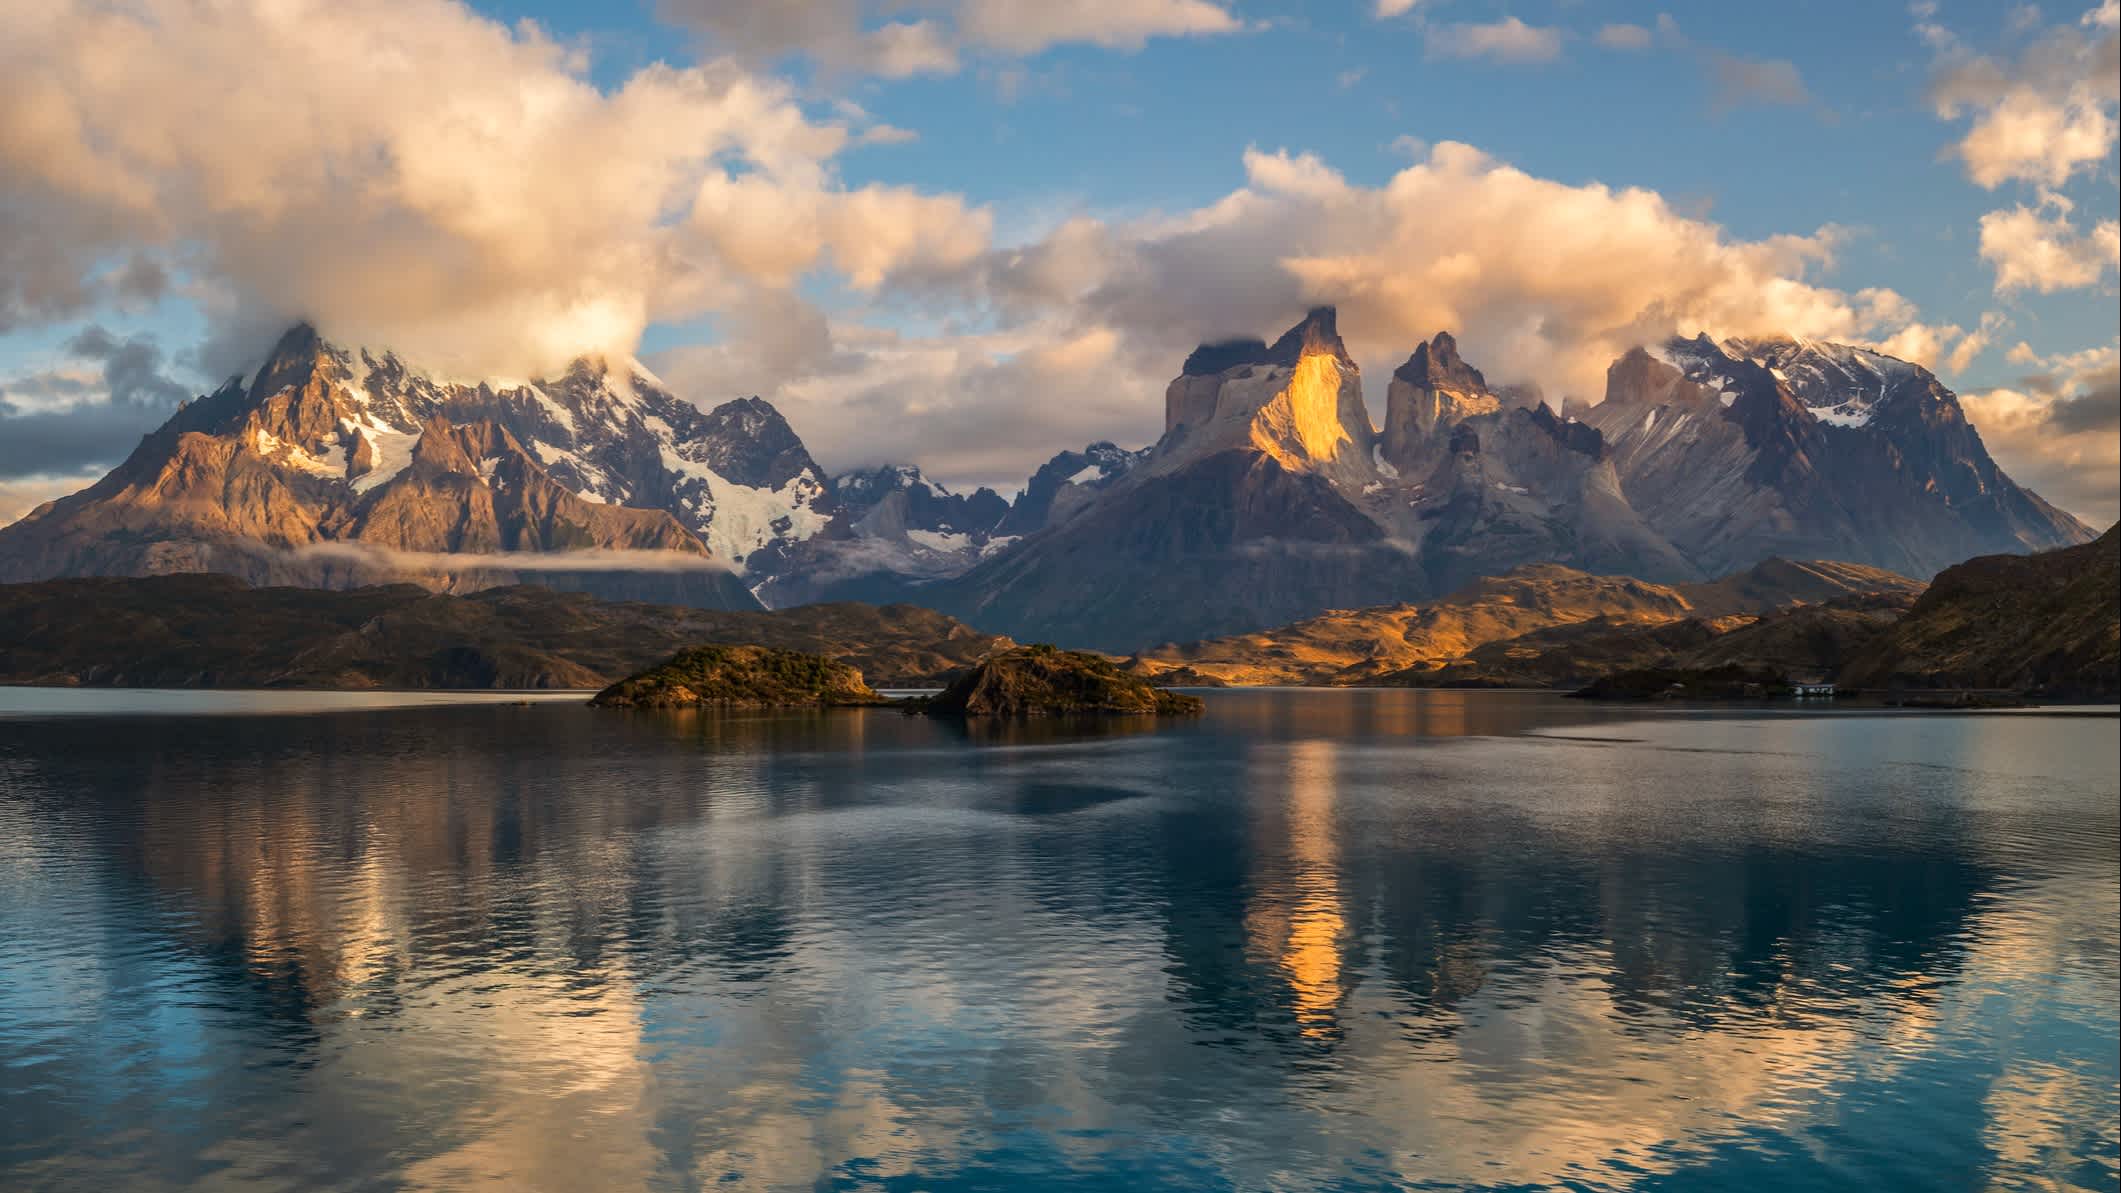 Découvrez quand partir au Chili pour découvrir le parc Torres del Paine